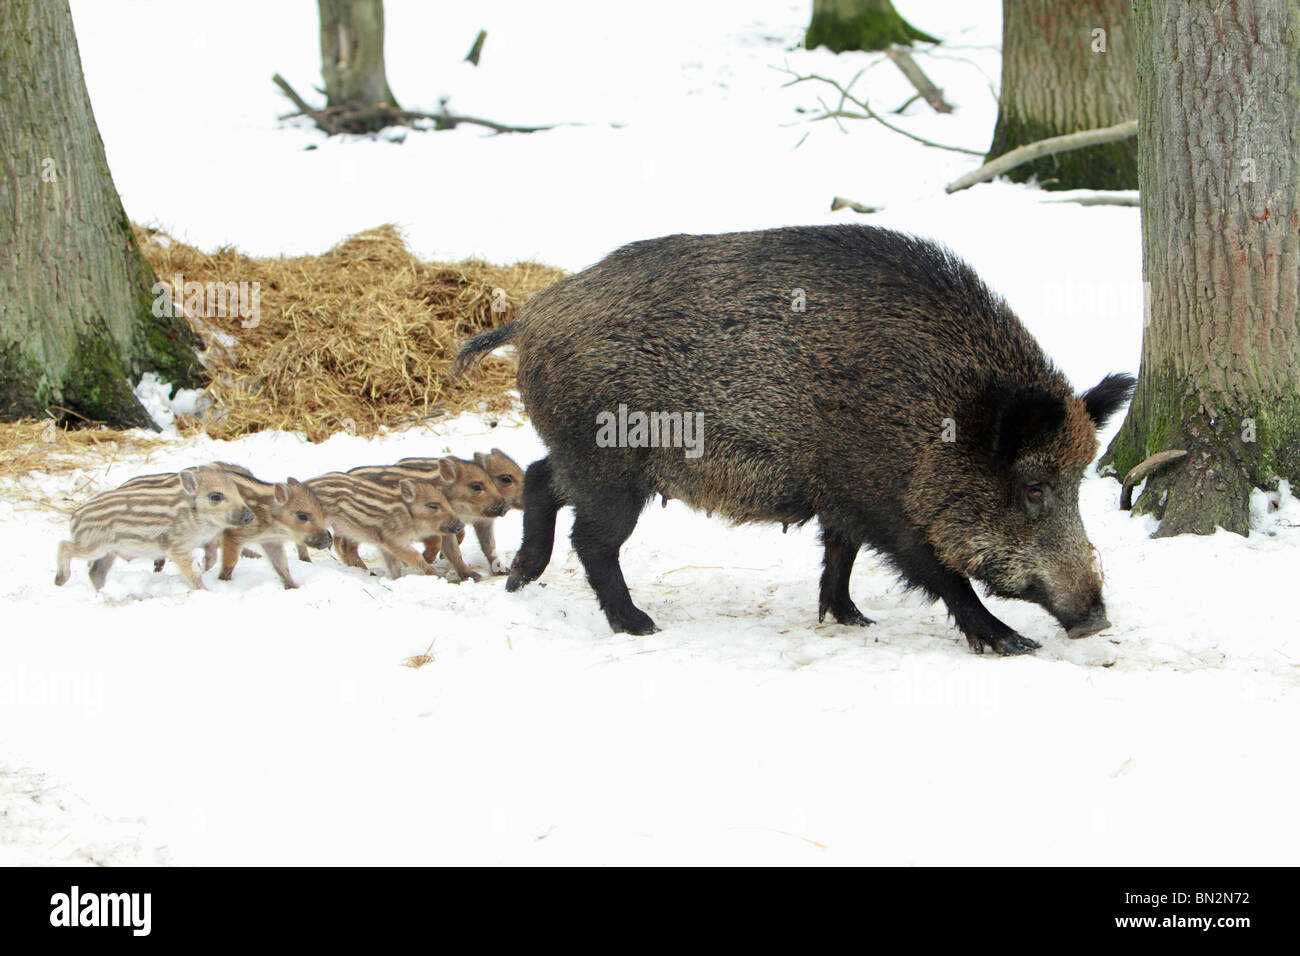 Européen du porc ou sanglier (Sus scrofa), SOW, menant ses six porcelets si forêt couverte de neige, hiver, Allemagne Banque D'Images